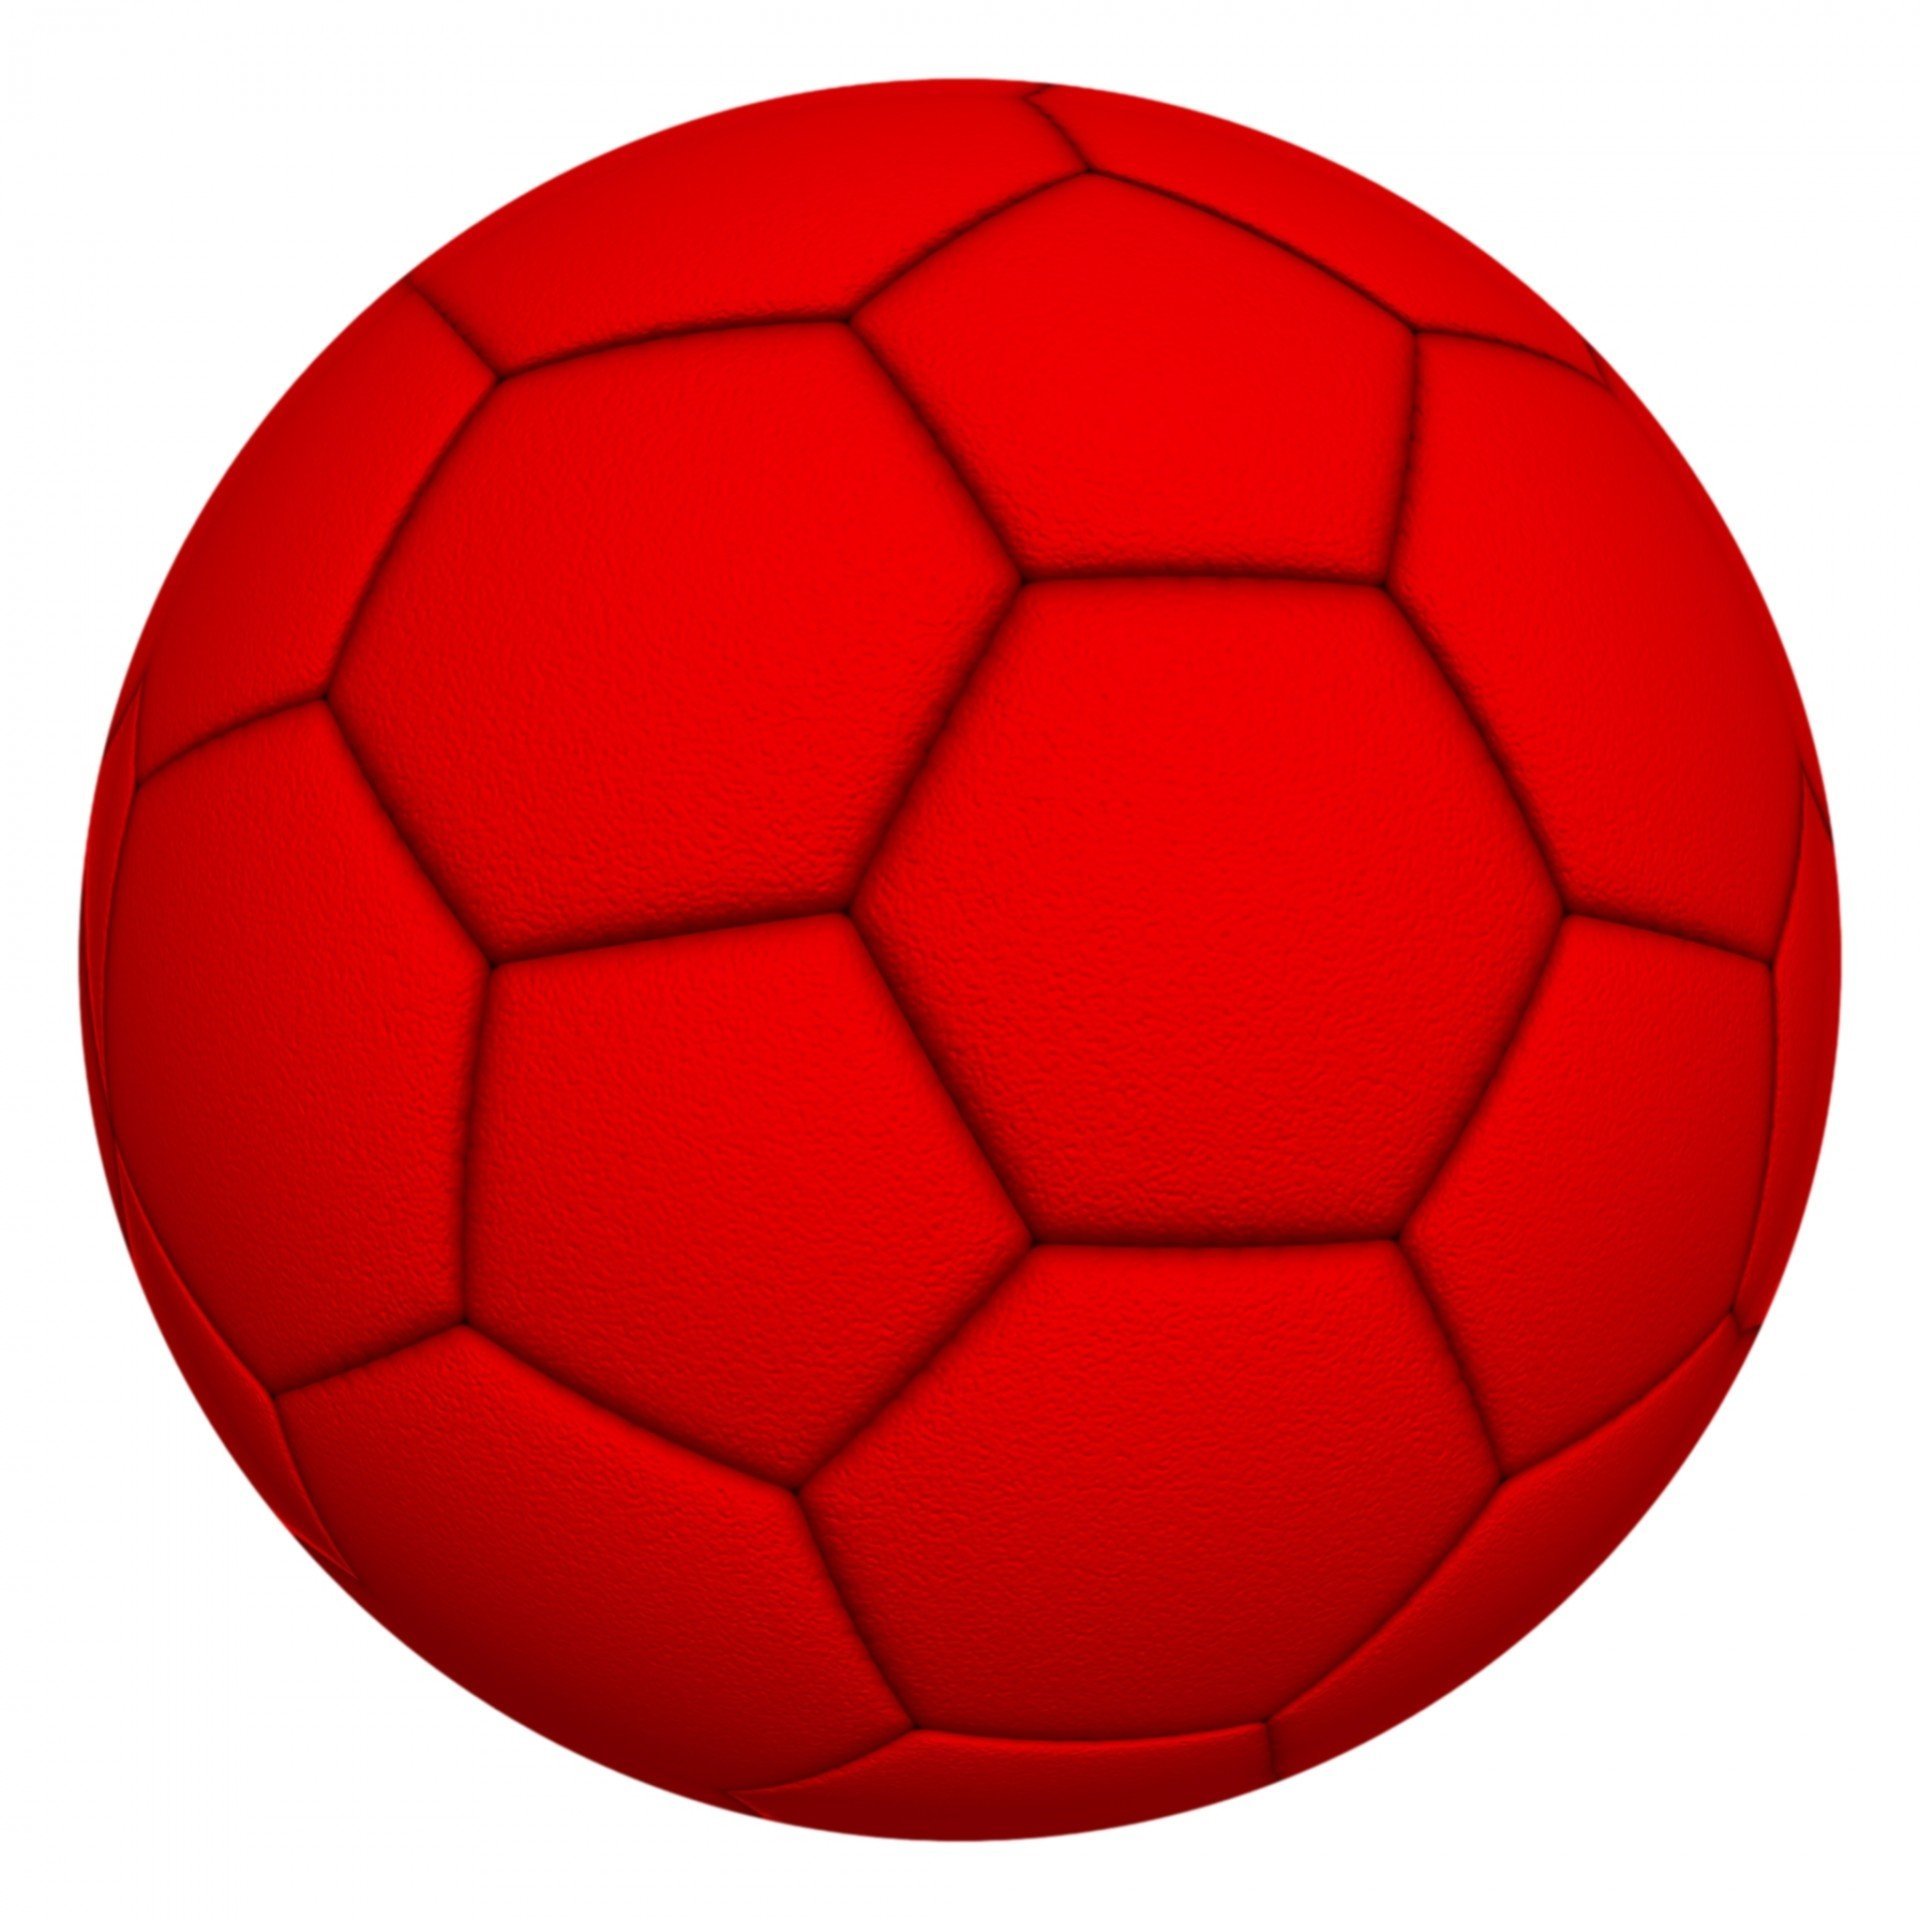 Download red balls. Красный мяч. Красный футбольный мяч. Предметы красного цвета. Мячик футбольный красный.